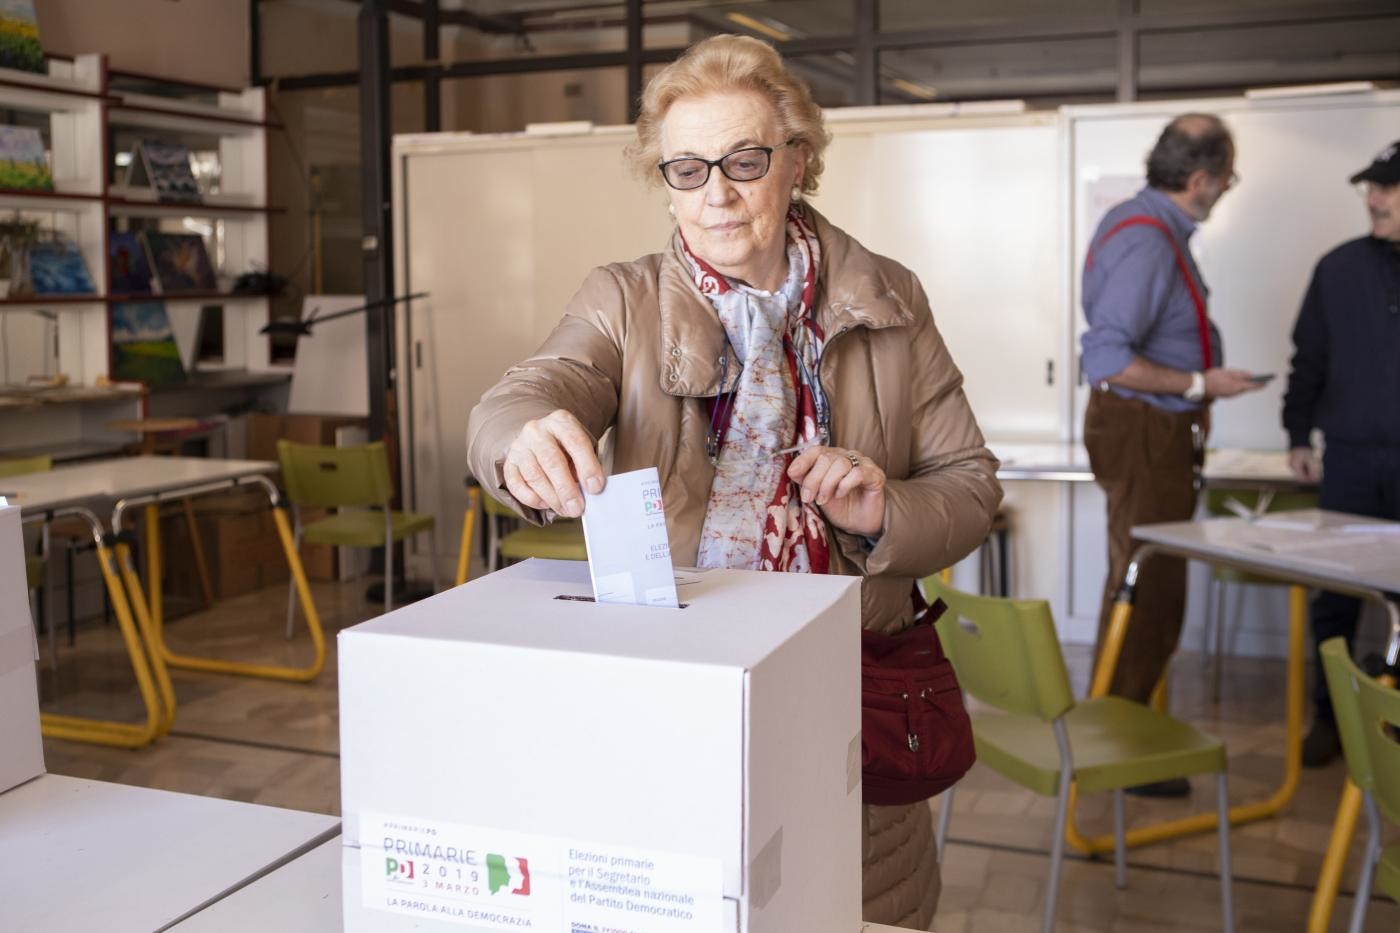 Piemonte, regionali: chi sono i 4 candidati alla presidenza